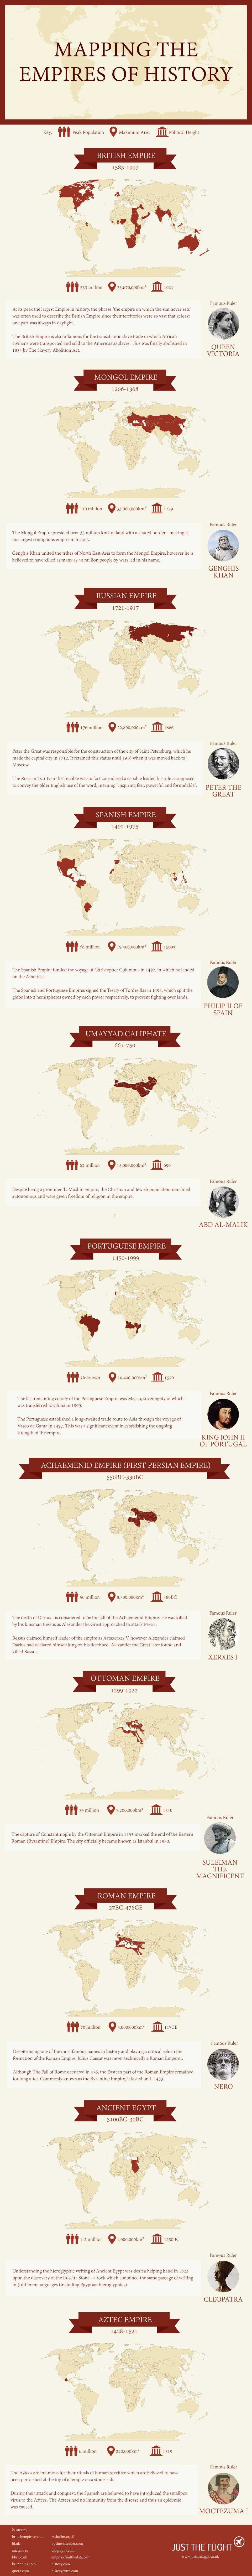 imparatorluklar-infografik